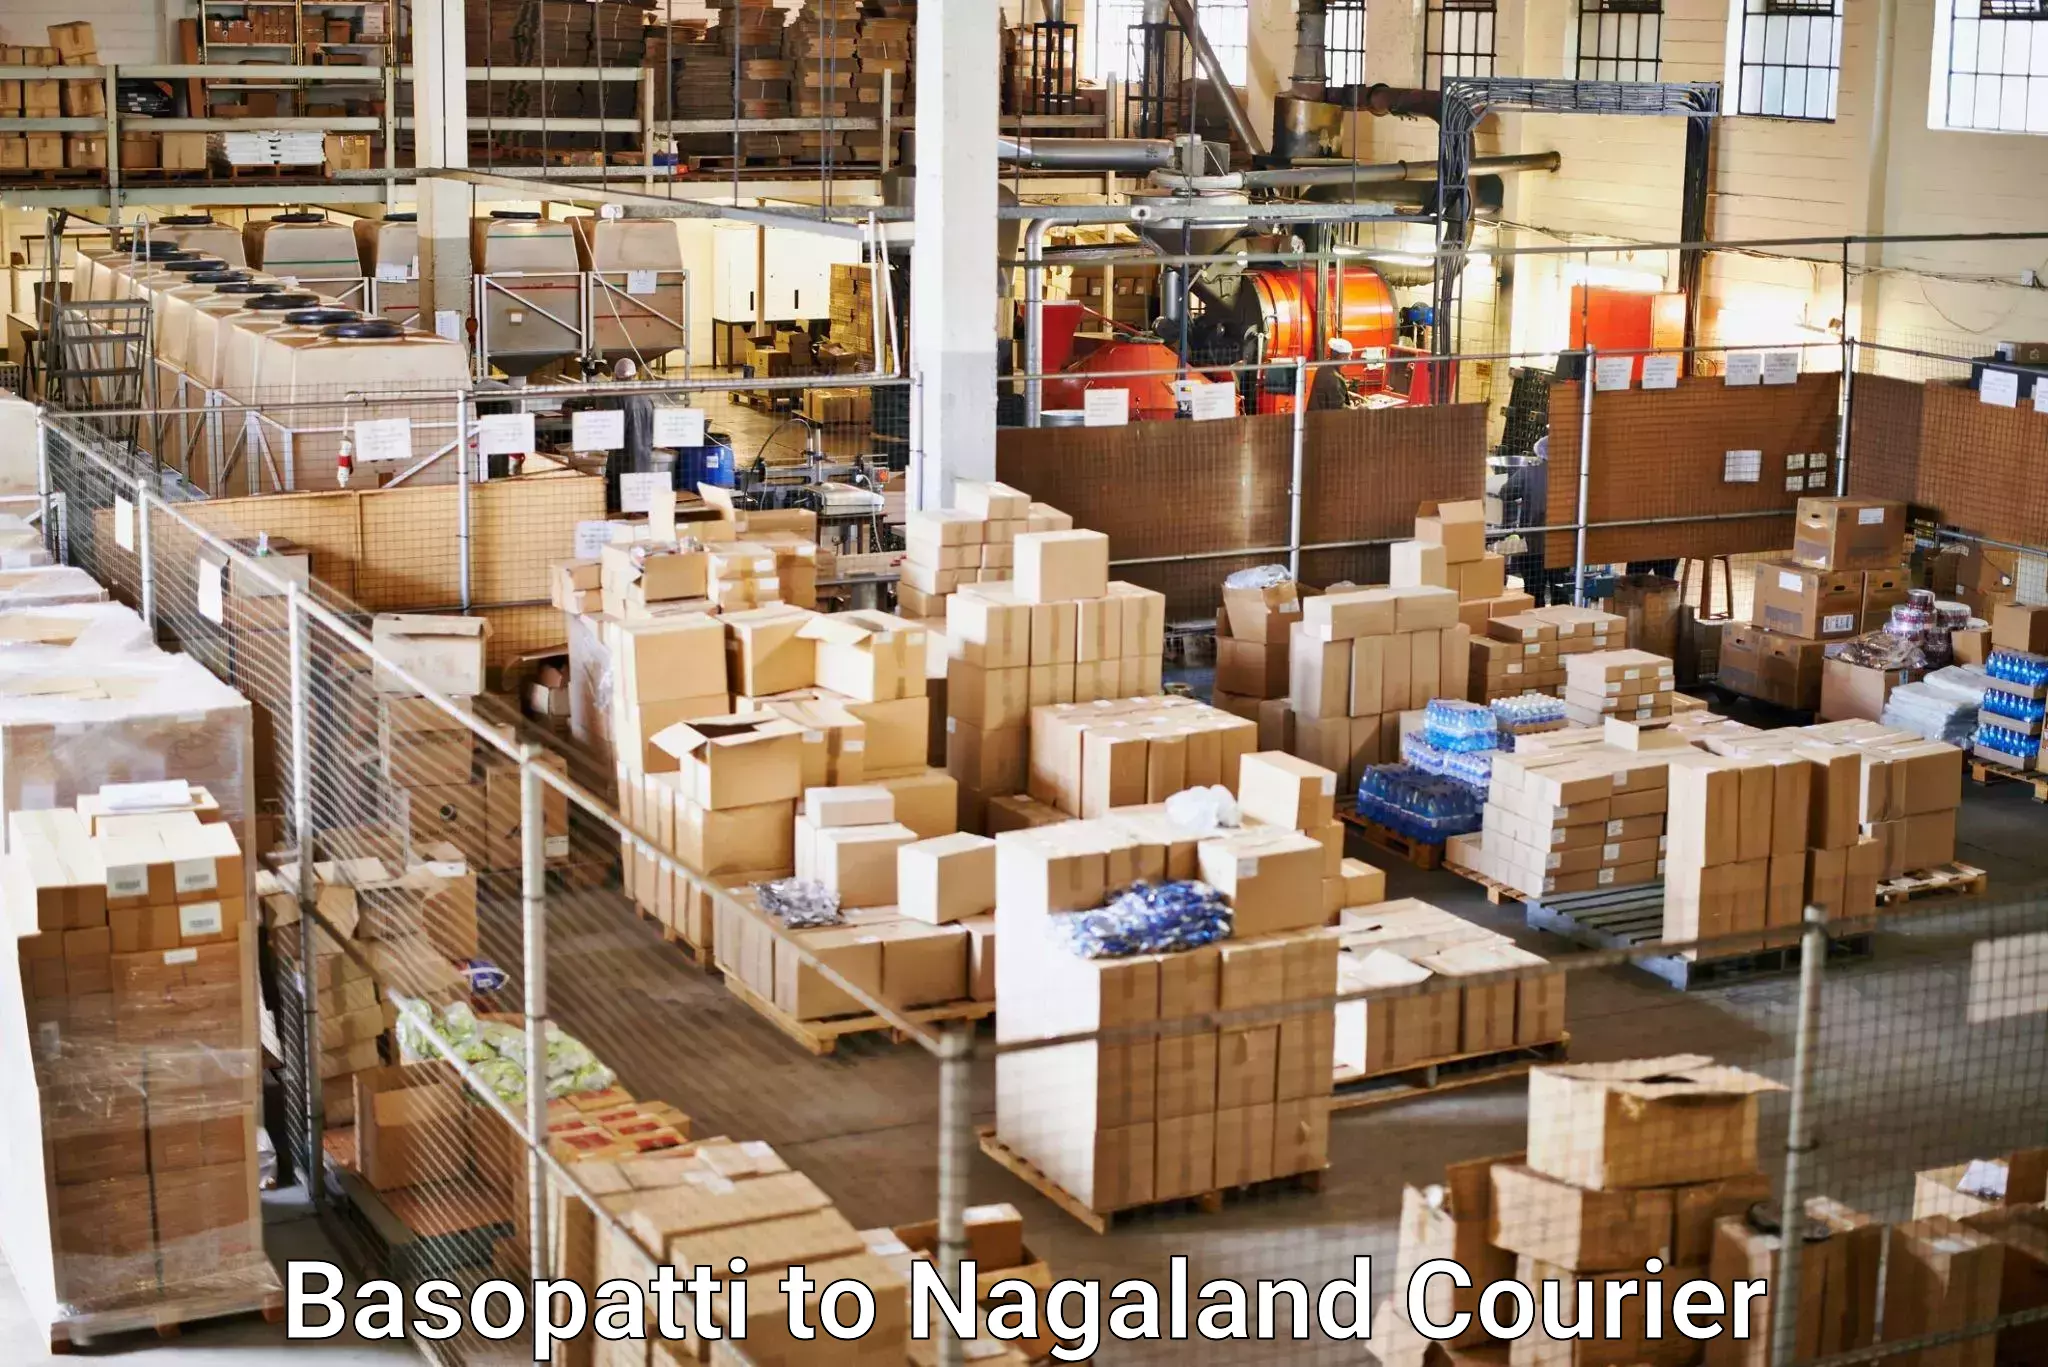 Nationwide shipping capabilities Basopatti to Kohima